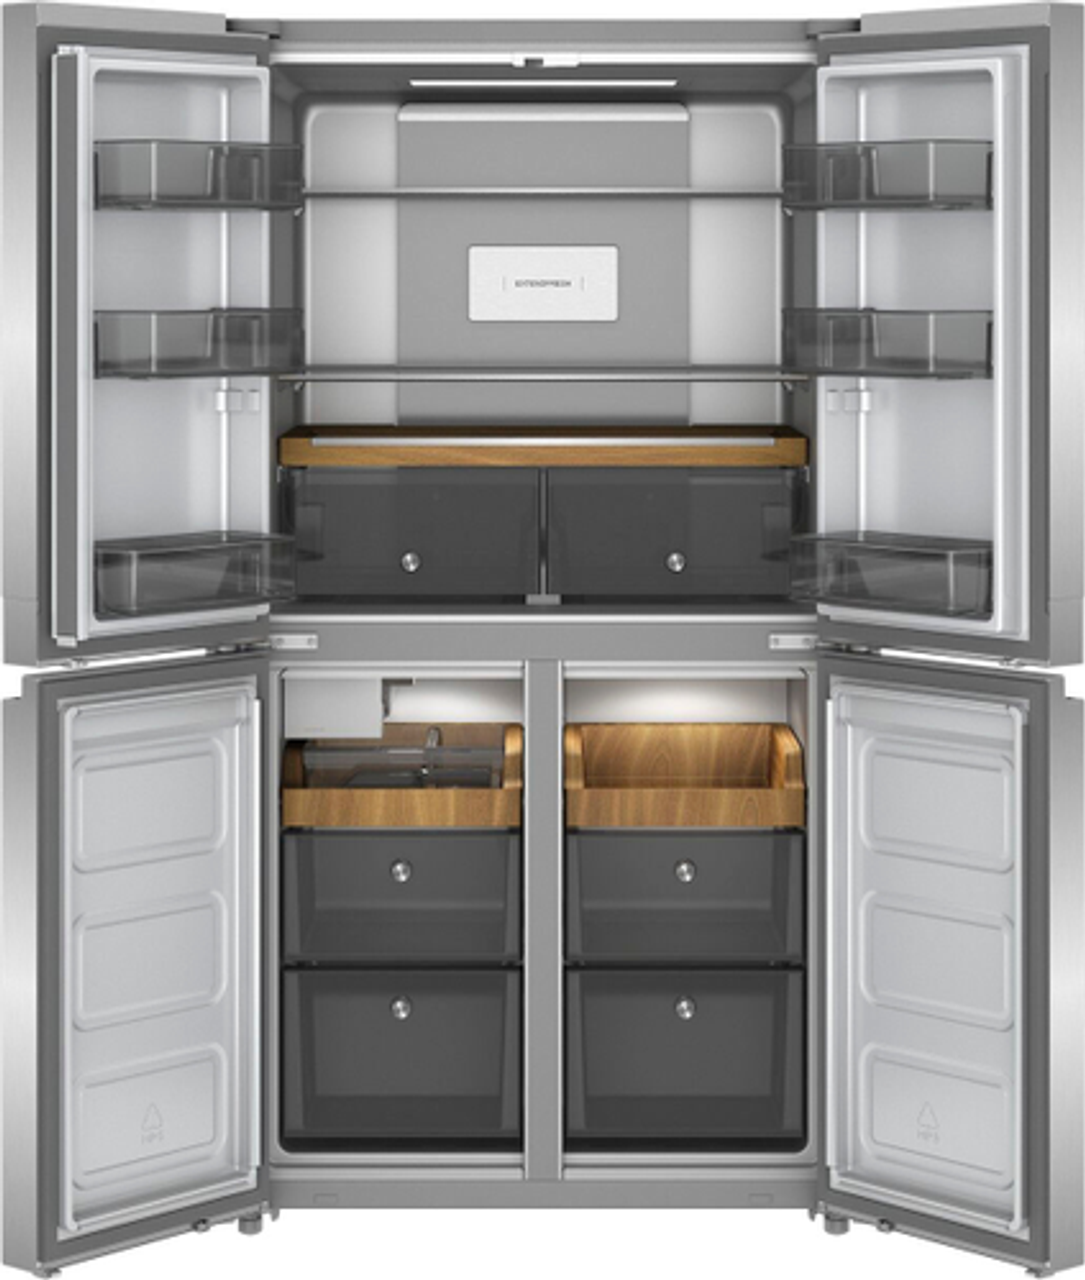 KitchenAid - 19.4 Cu. Ft. Bottom-Freezer 4-Door French Door Refrigerator - PrintShield Finish Stainless Steel